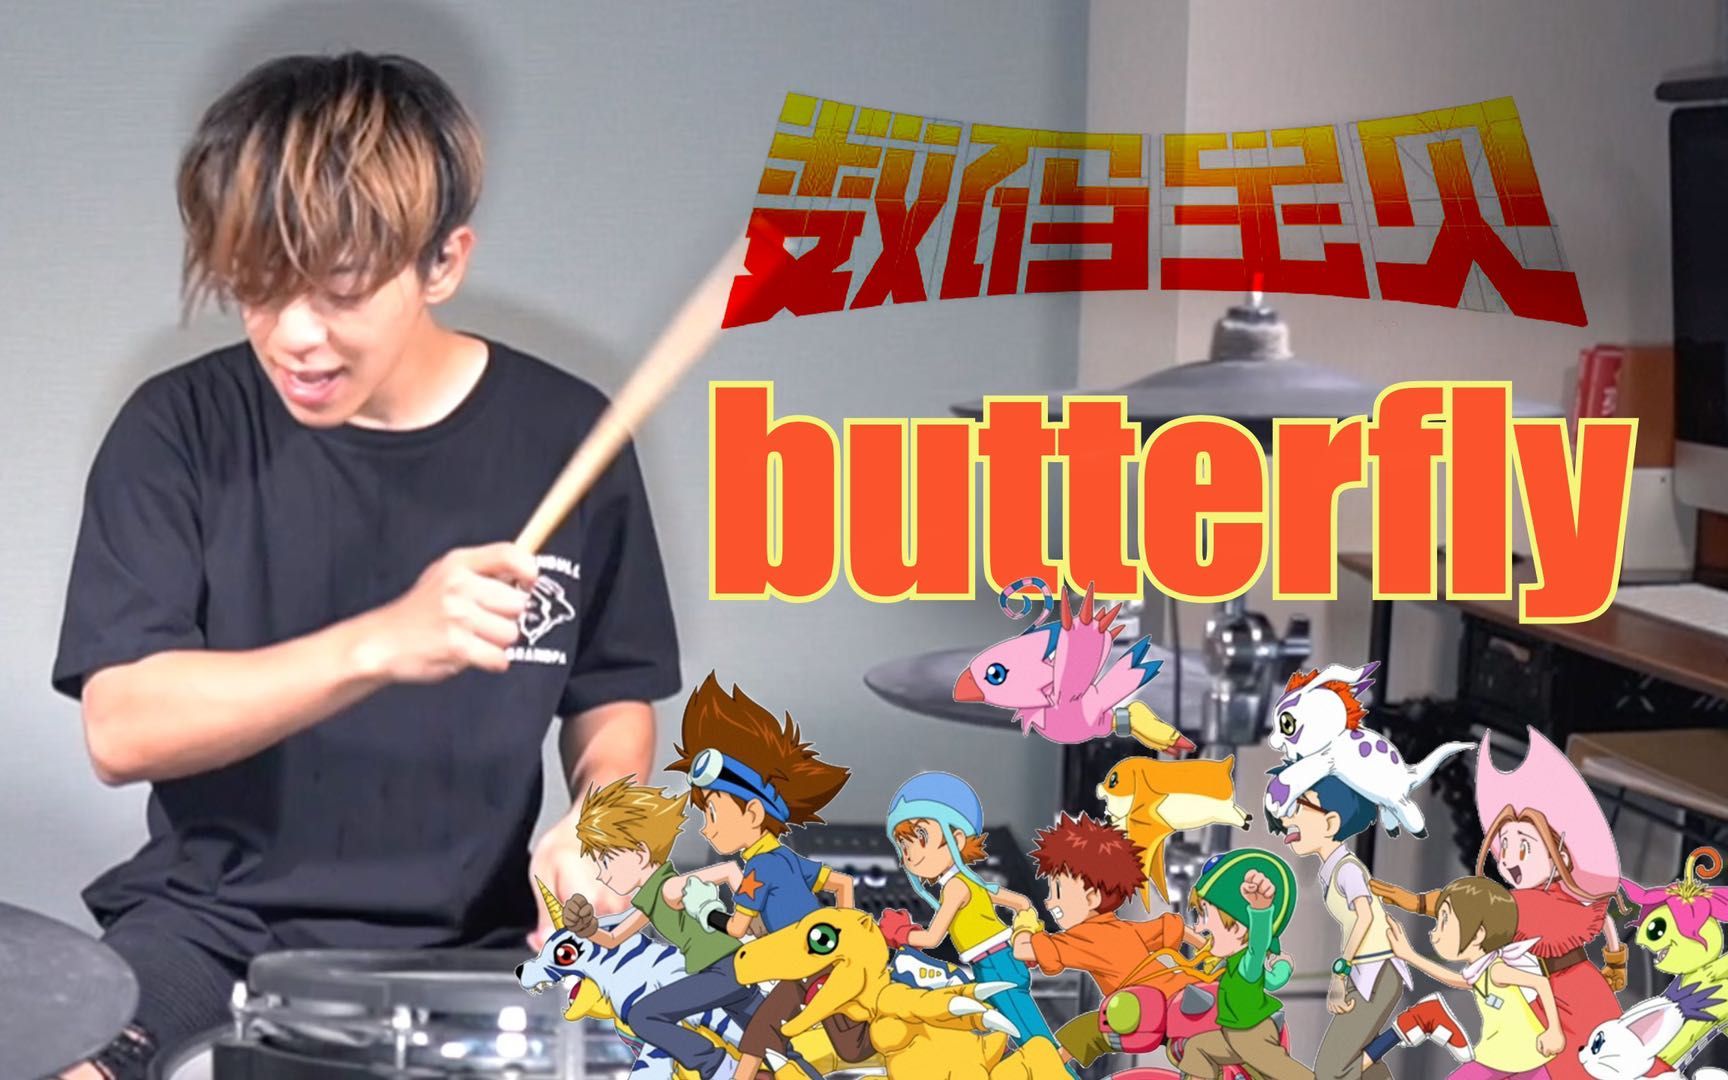 【架子鼓】【数码宝贝】Butterfly-和田光司，日本鼓手热血翻奏！